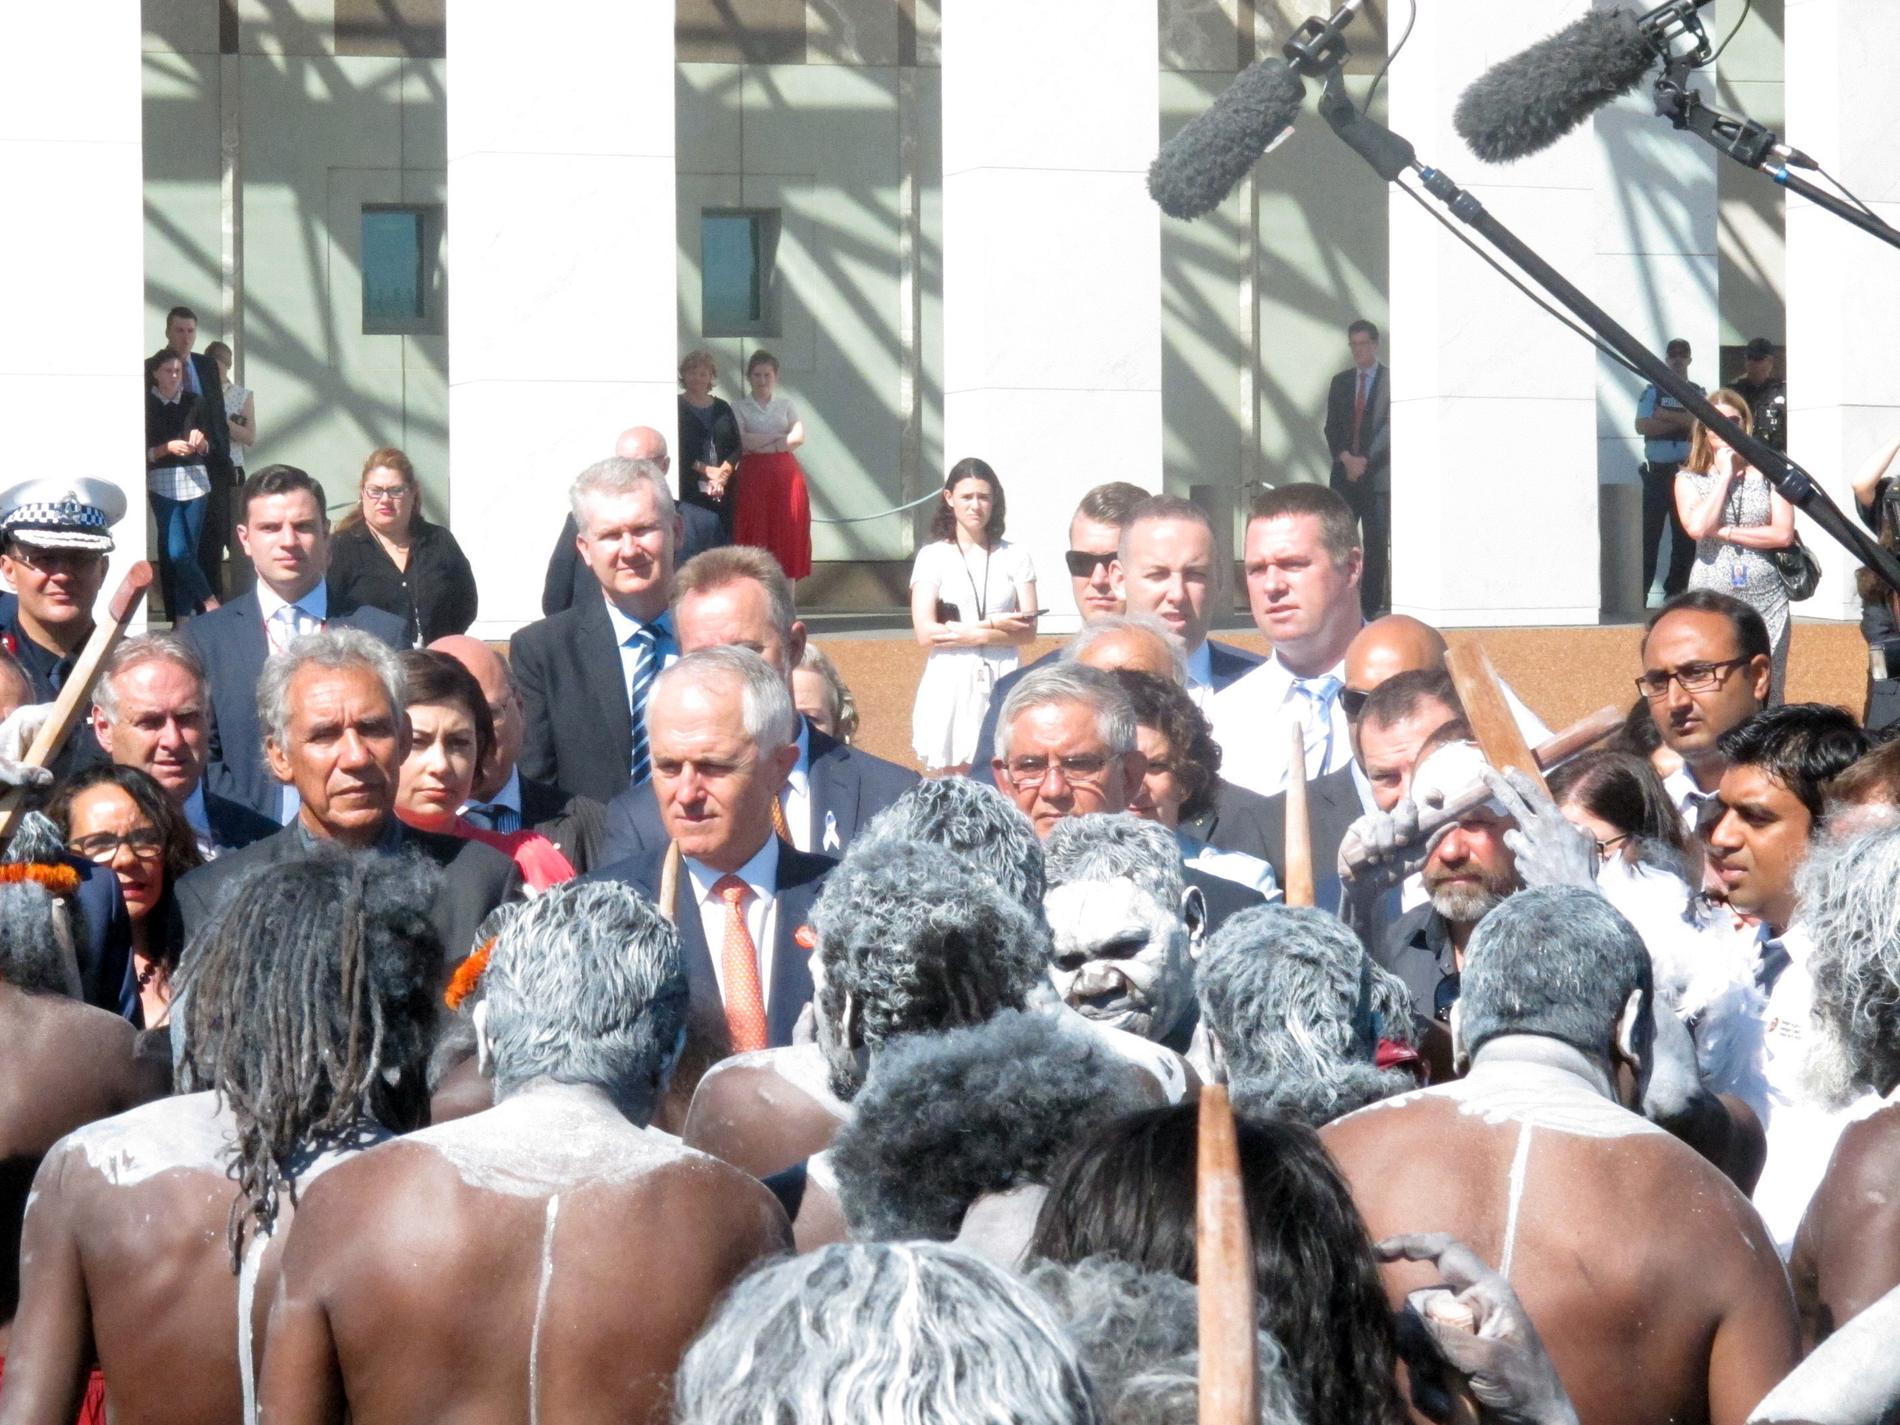 Australiens premiärminister Malcolm Turnbull, i orange slips i mitten, tar emot en aboriginsk dansgrupp inför en ceremoni utanför parlamentet i Canberra i november 2016. Arkivbild.